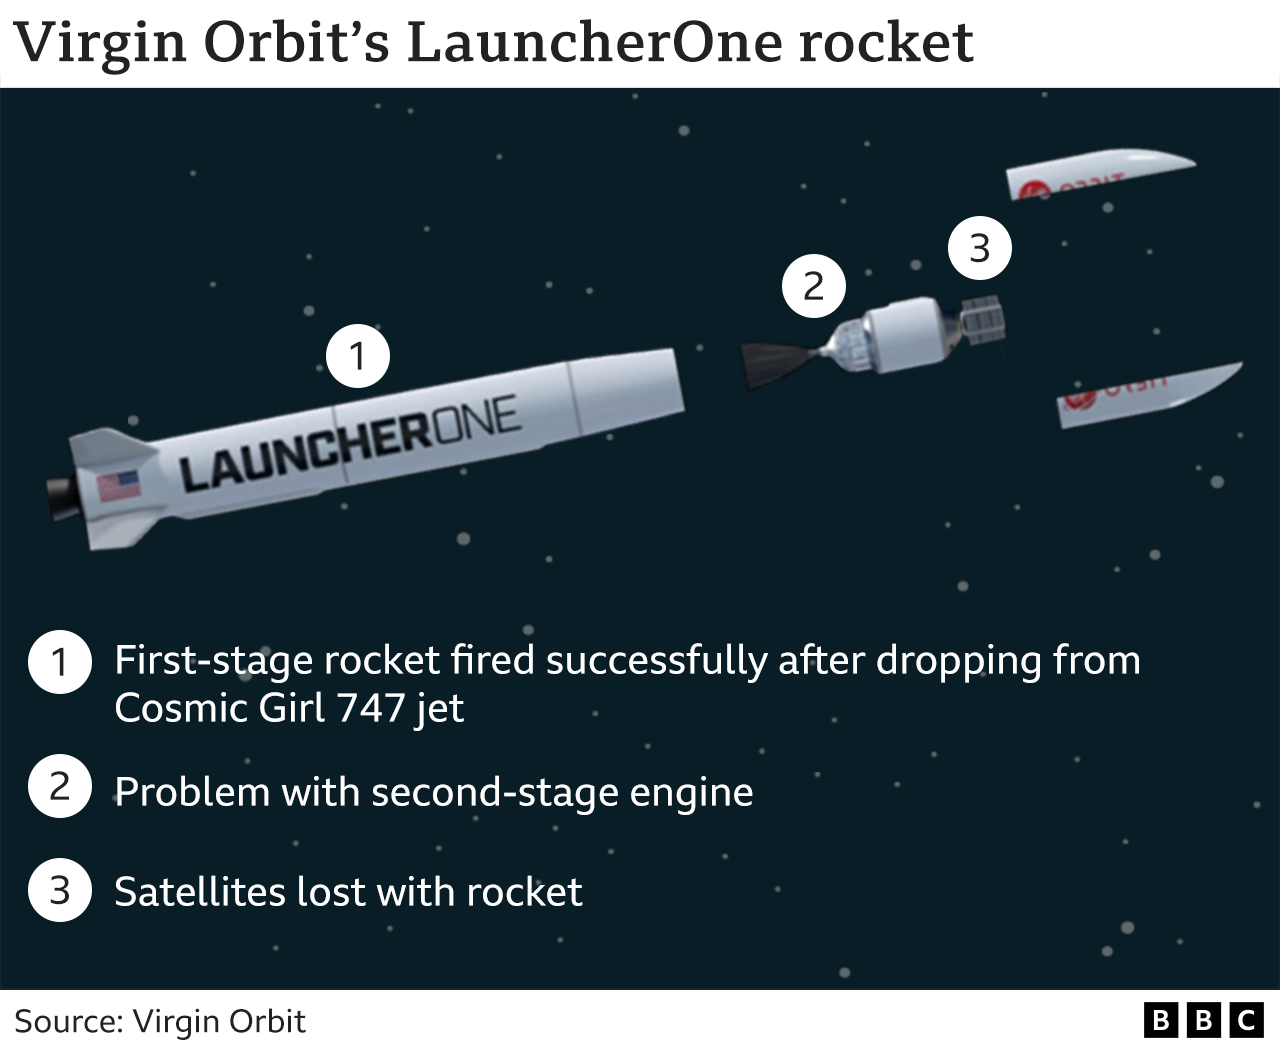 Графика, показывающая этапы ракеты. 1. Ракета первой ступени успешно запустилась после сброса с самолета Cosmic Girl 747. 2. Проблема с двигателем второй ступени. 3. Спутники потеряны с ракетой